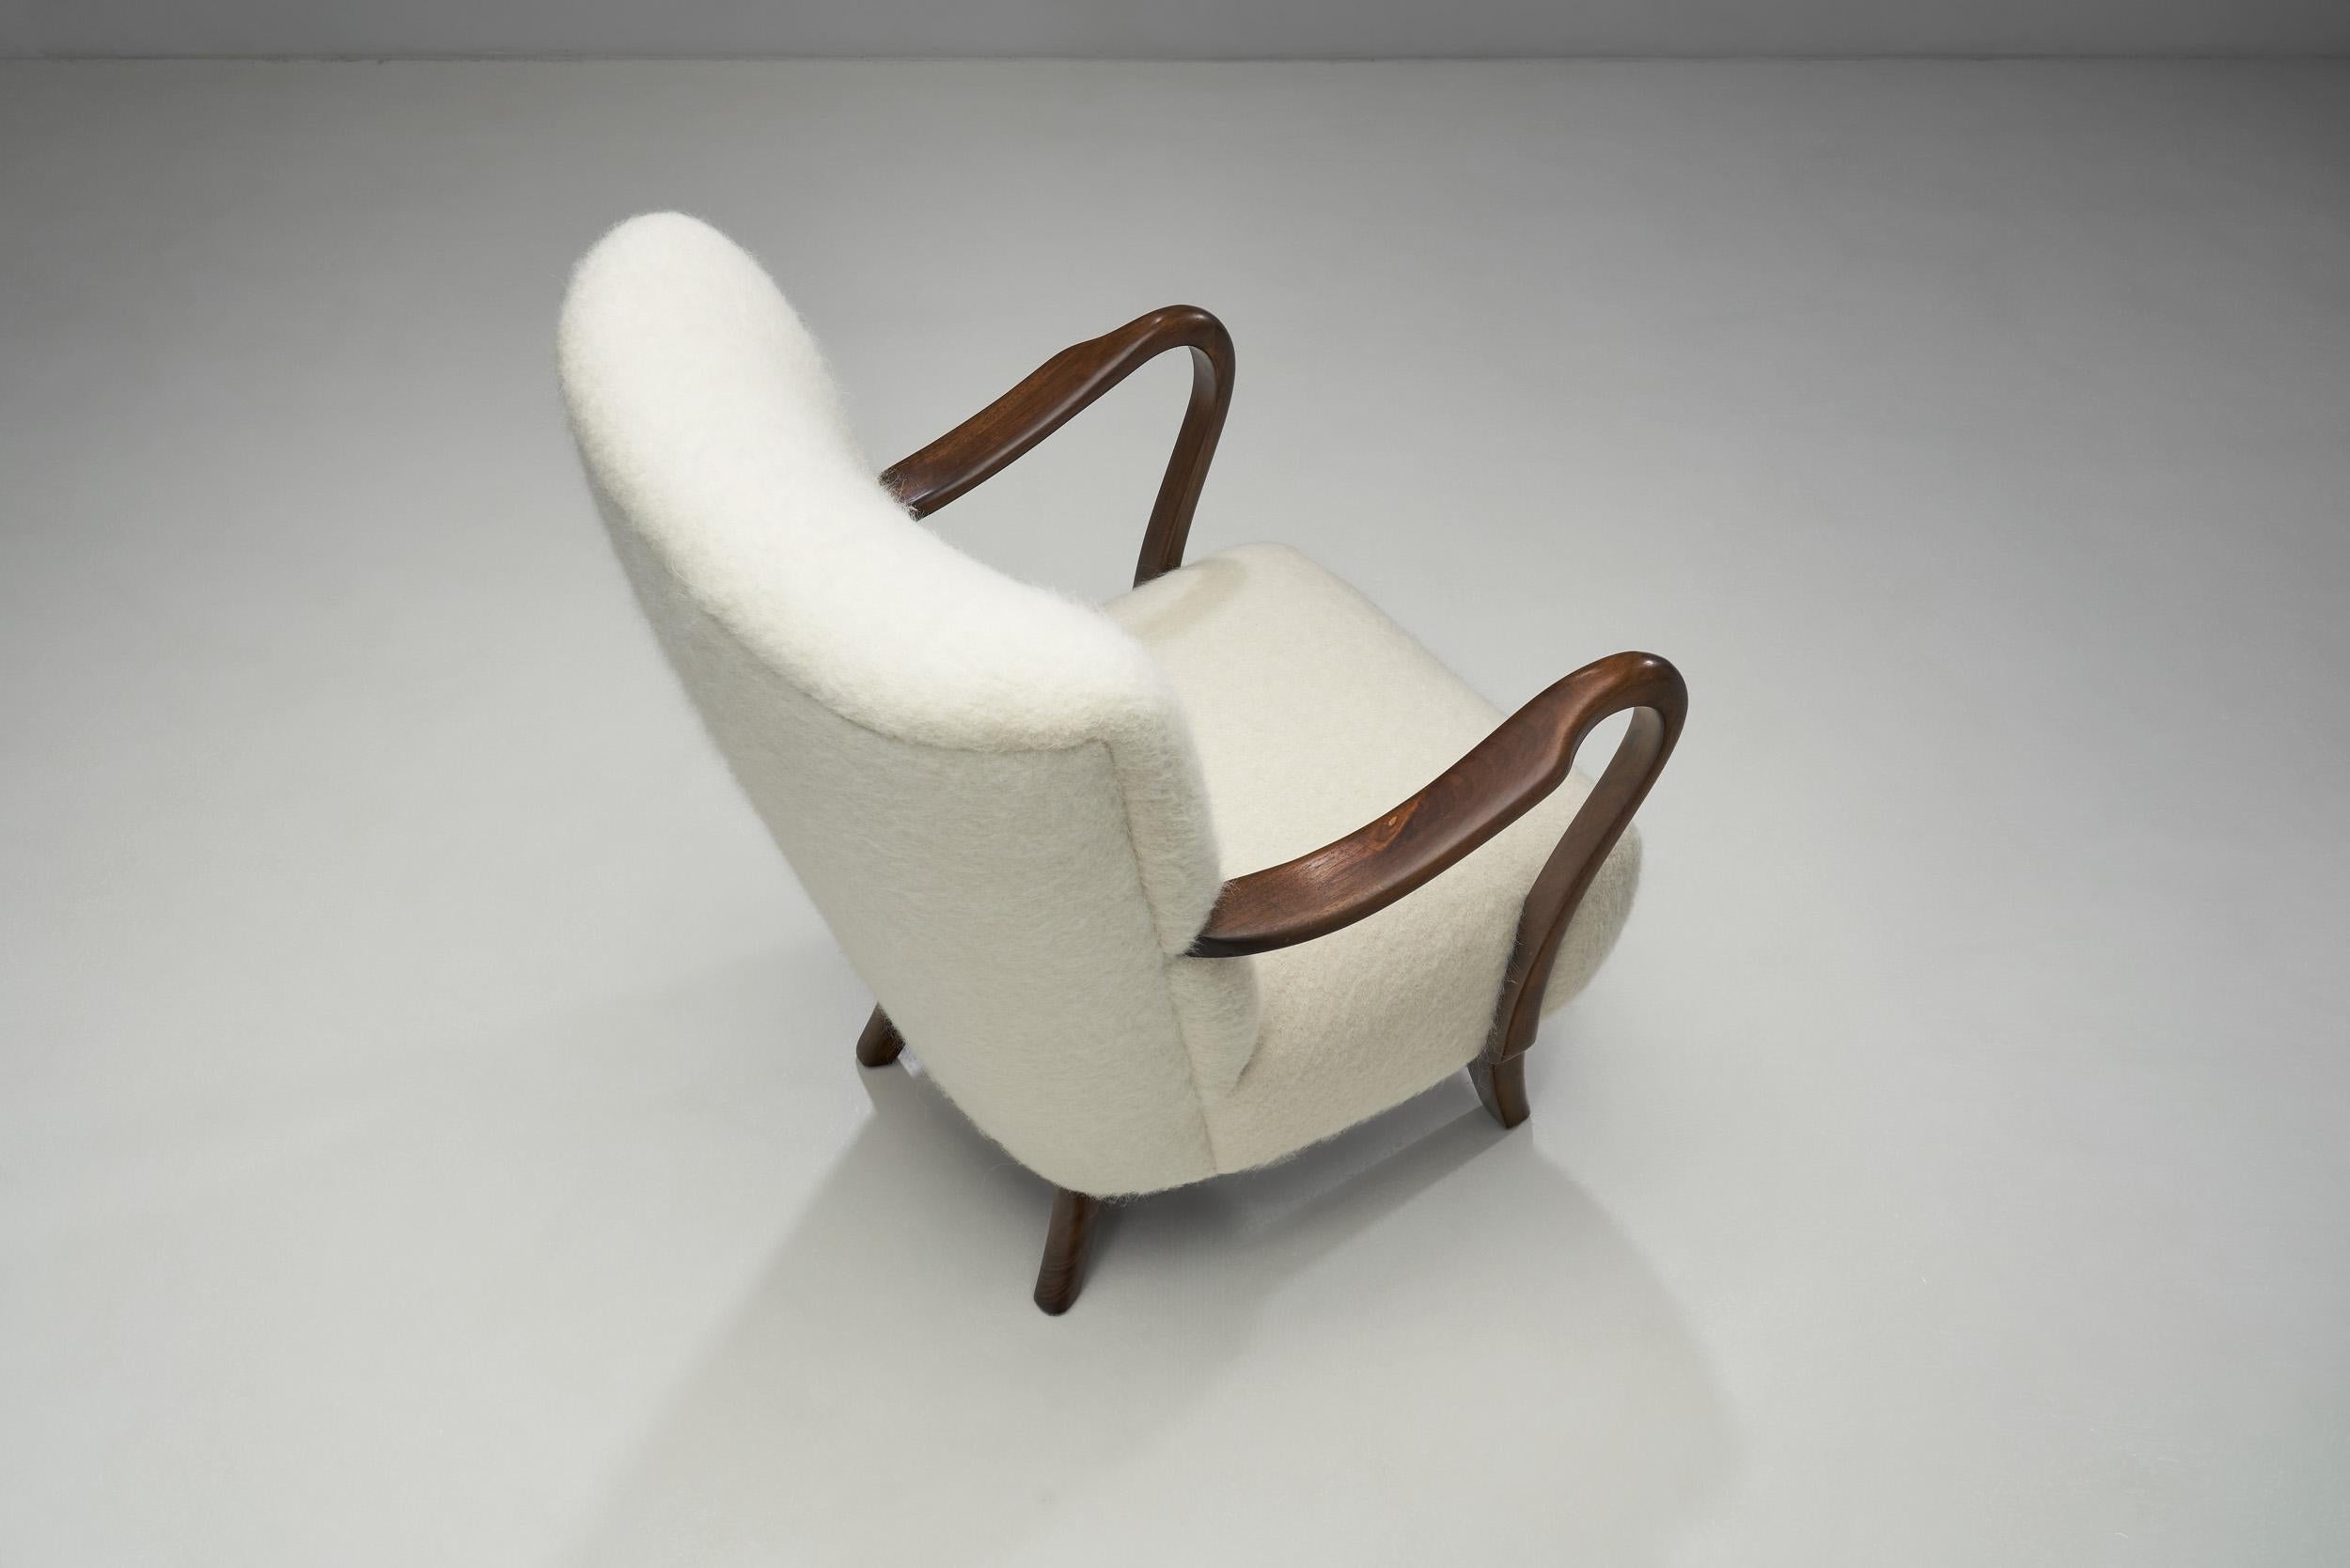 20th Century Alfred Christensen Upholstered Armchair for Slagelse Møbelfabrik, Denmark 1940s For Sale